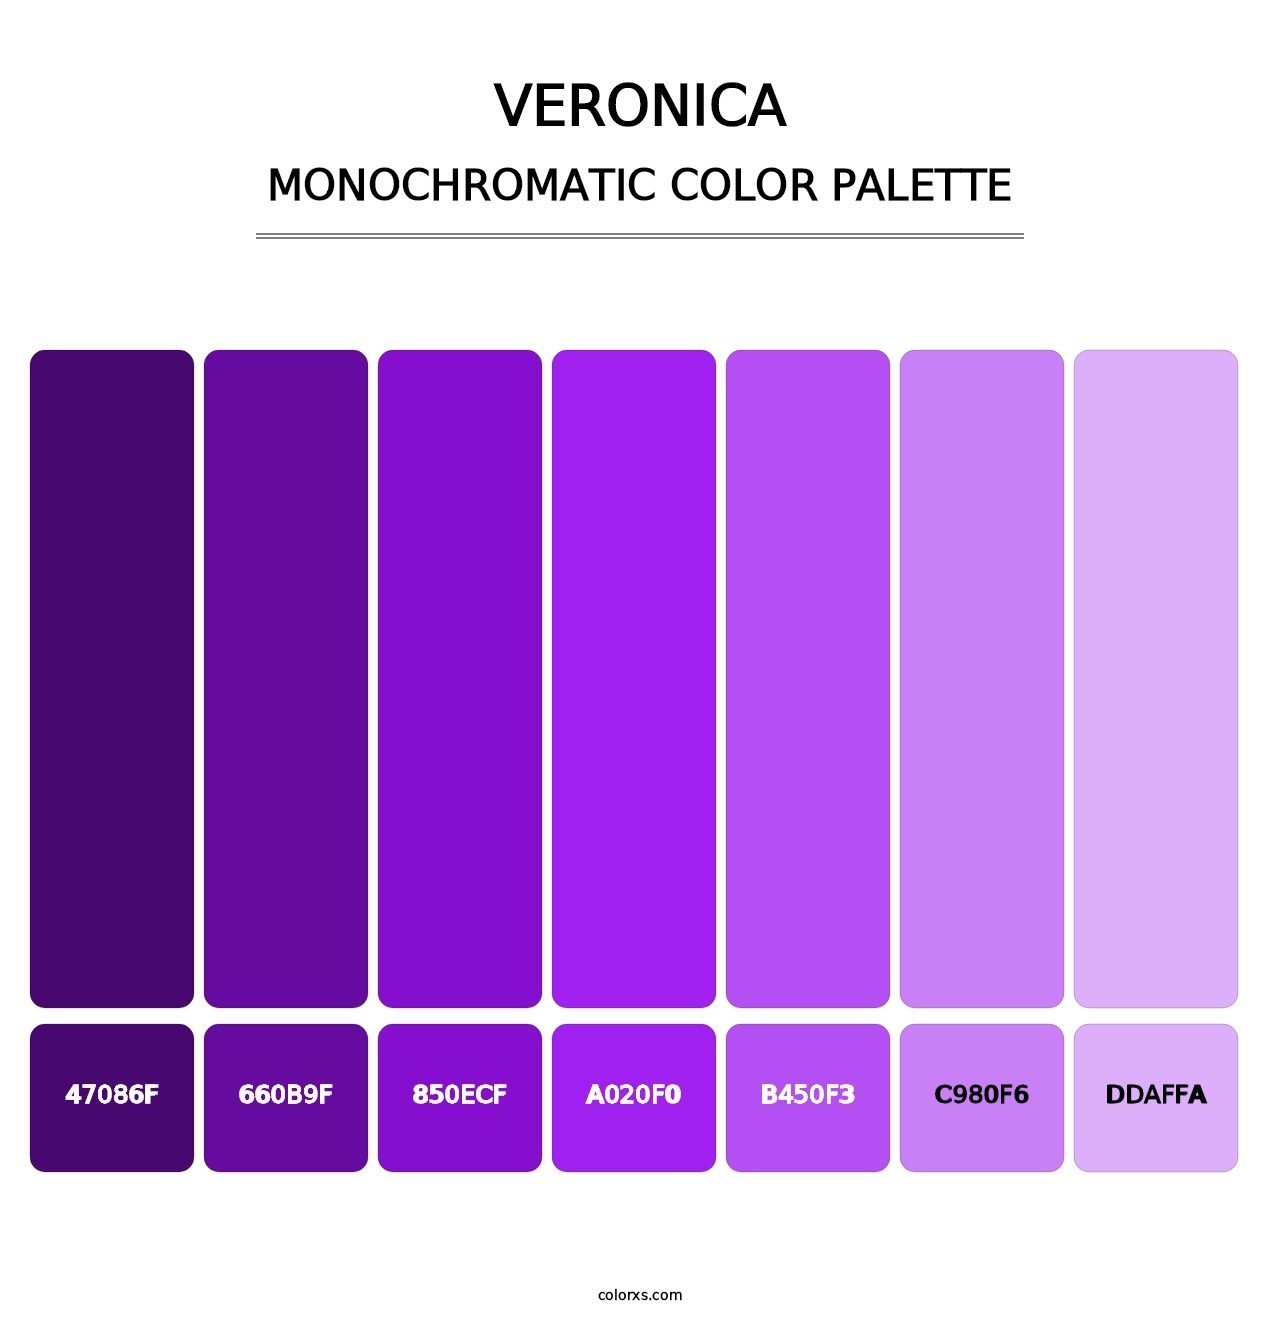 Veronica - Monochromatic Color Palette